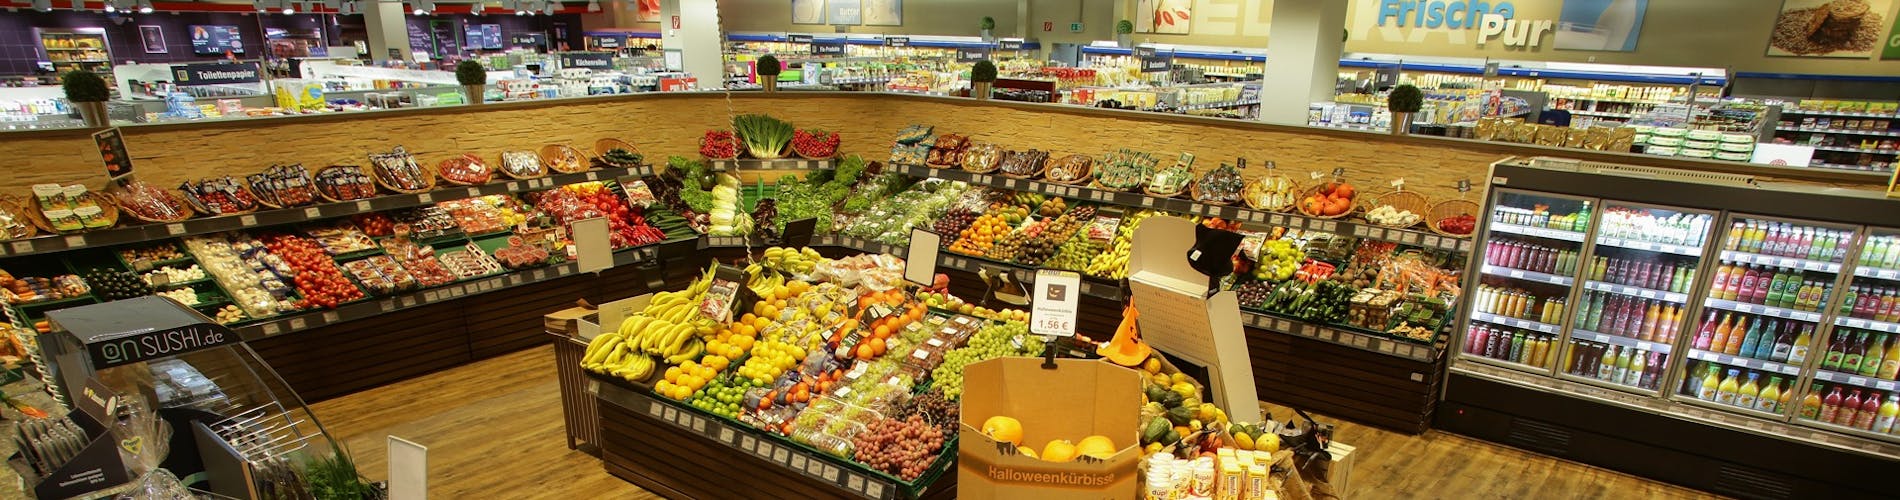 Obst- & Gemüsetheke Mitarbeiter App Handel Supermarkt